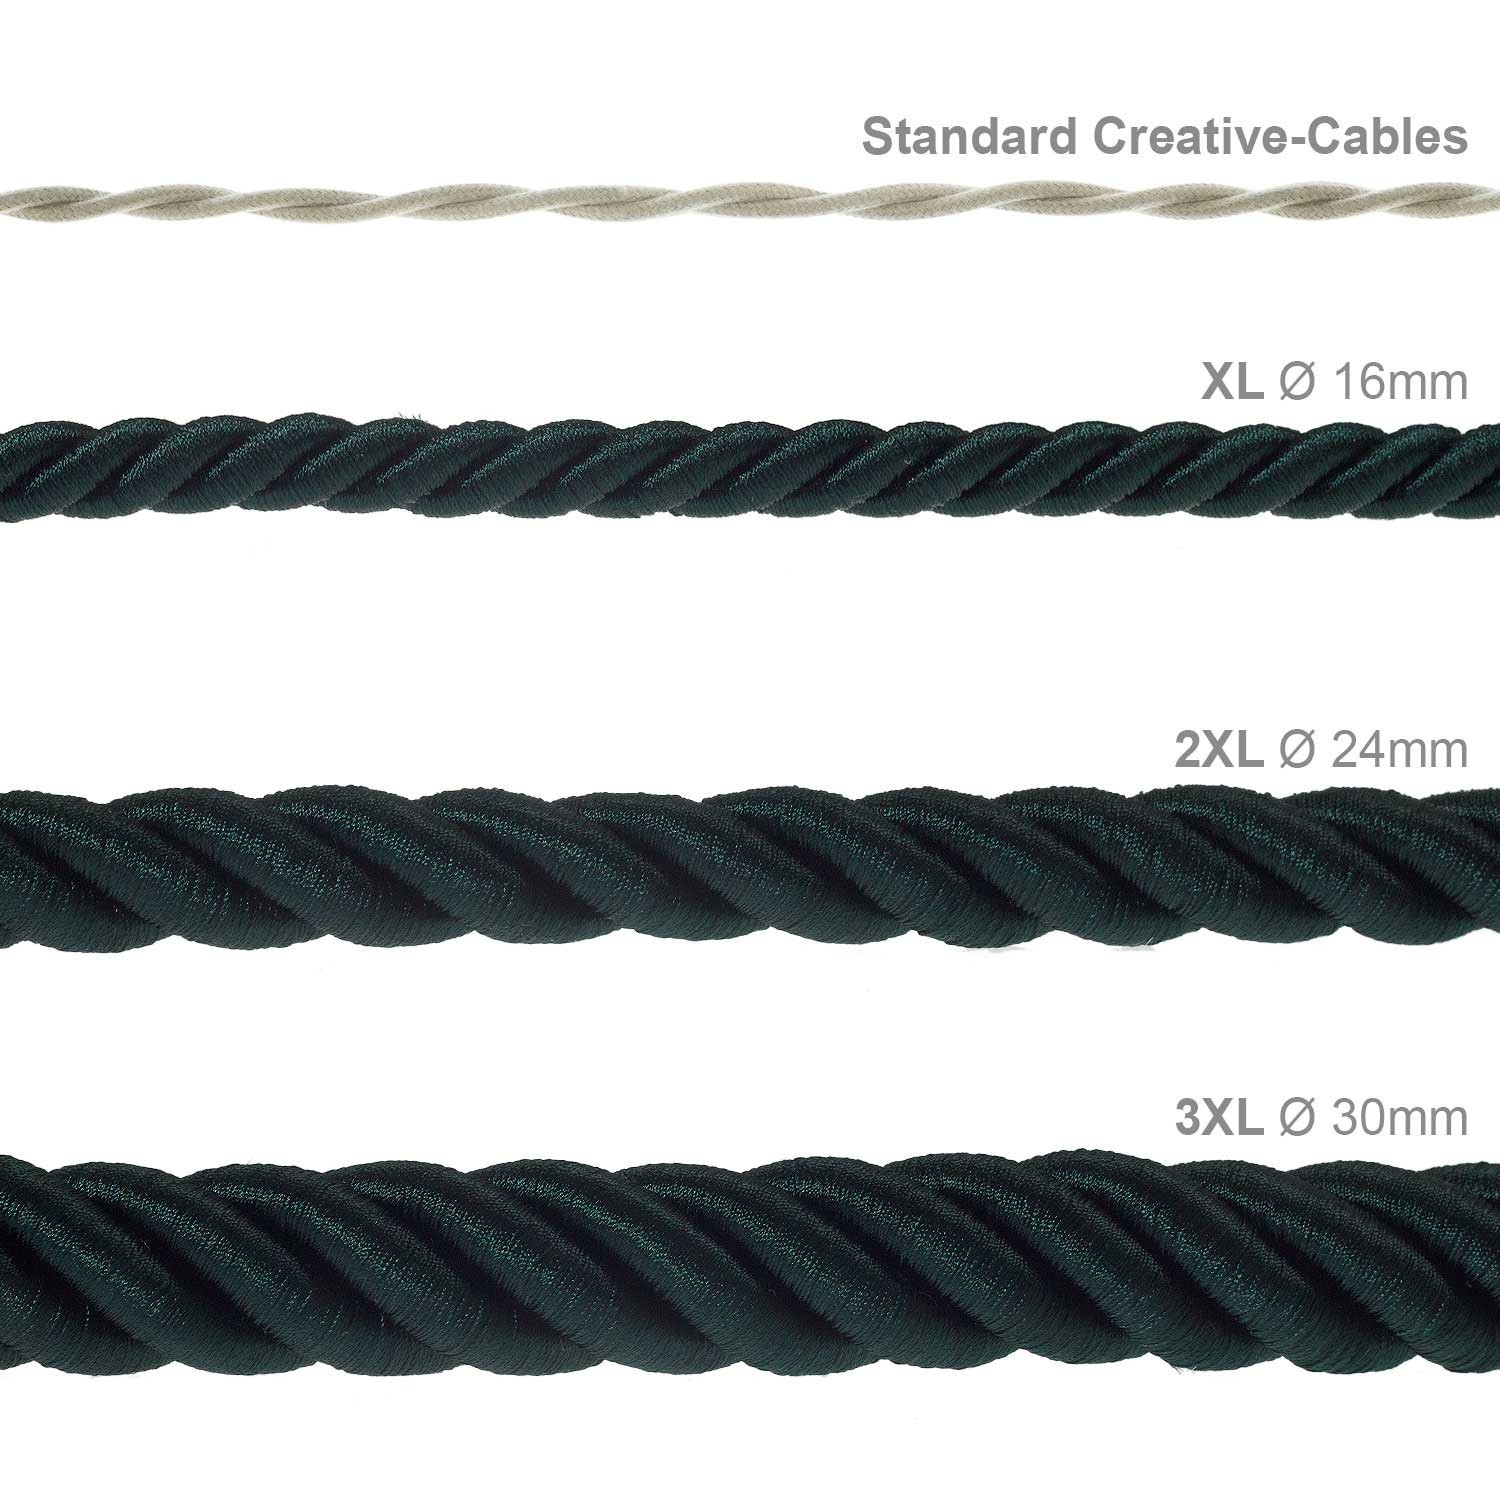 2XL električna vrv, električen kabel 3x0,75, prekrit s temno zelenim svetlečim blagom. Premer 24mm.